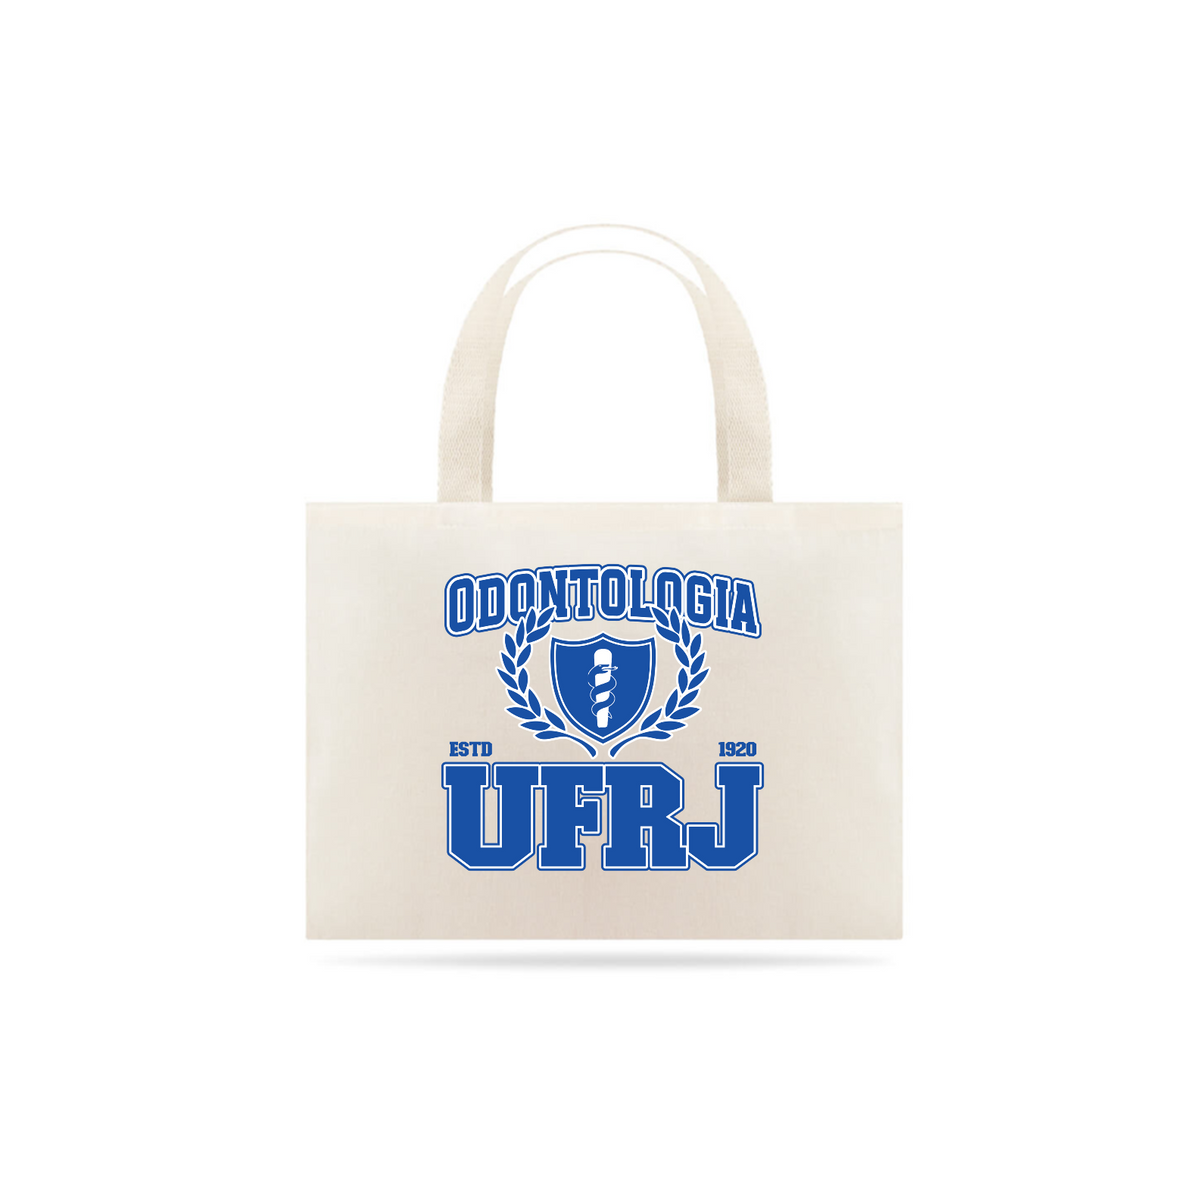 Nome do produto: UniVerso - Ecobag Odontologia UFRJ